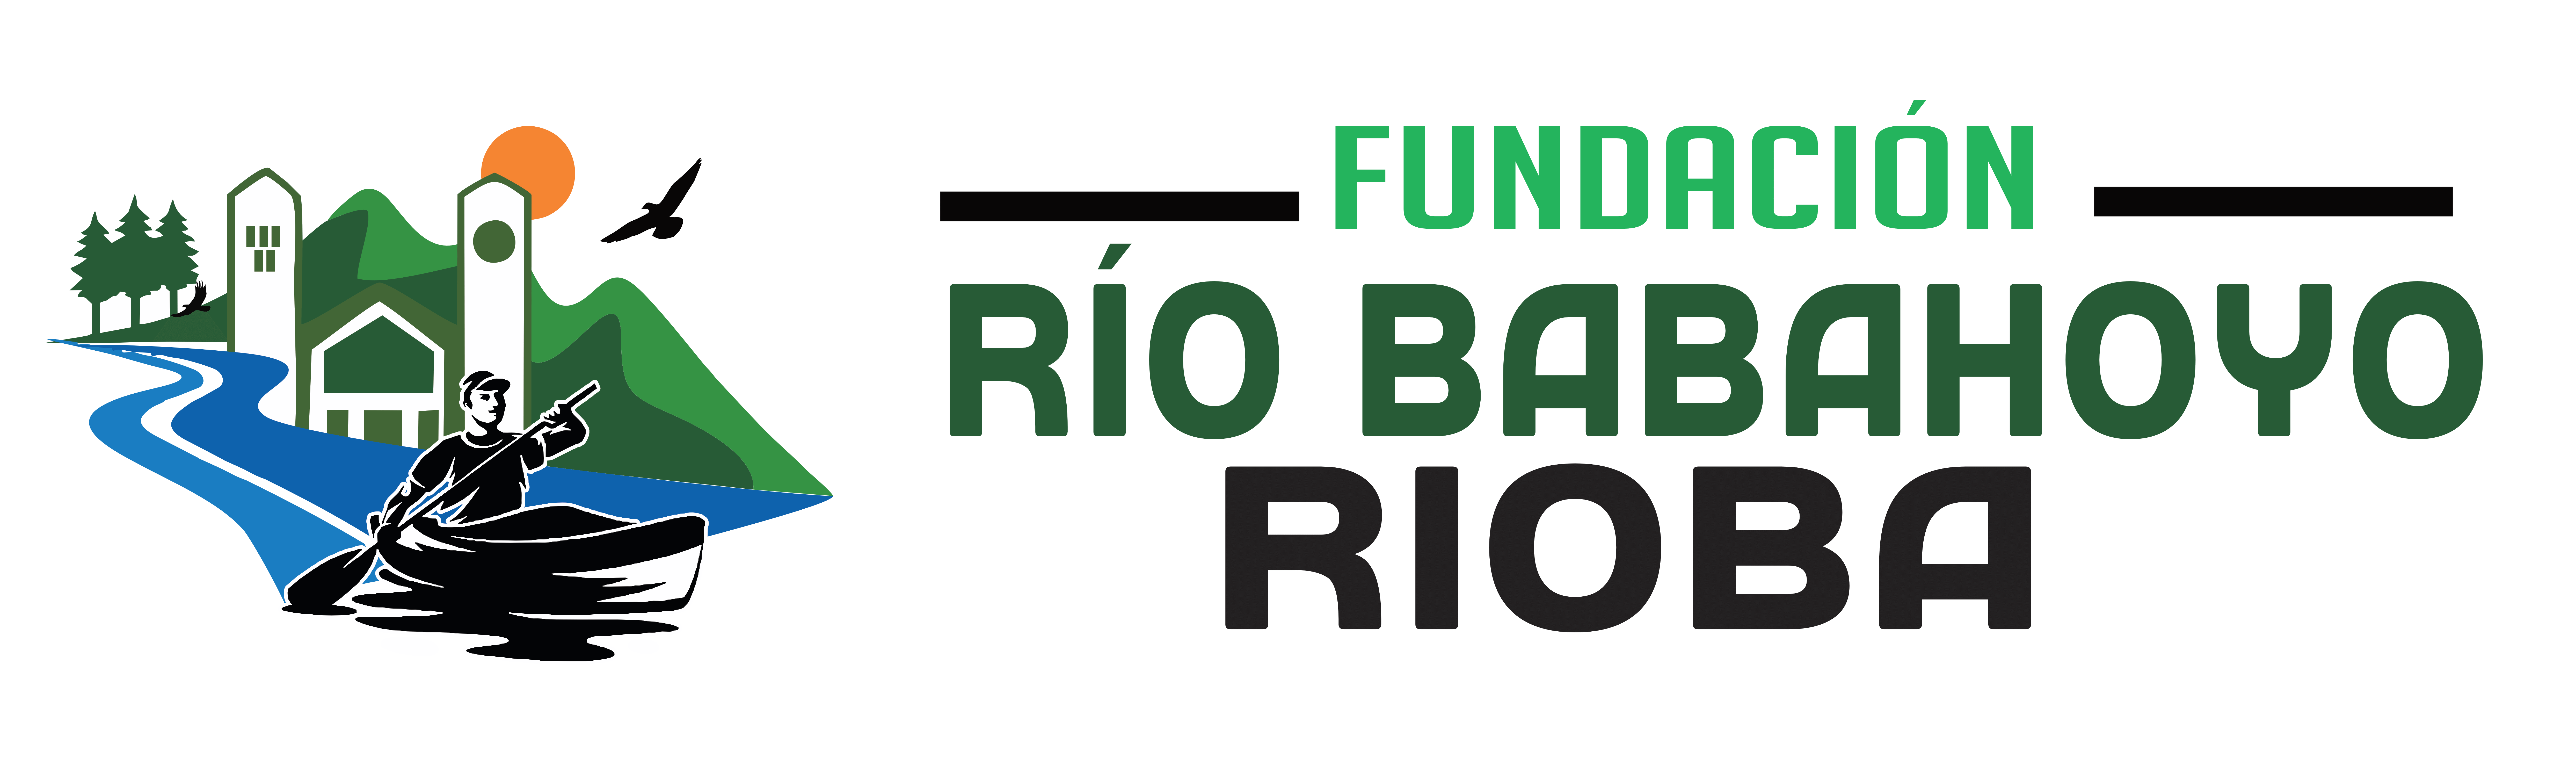 Fundación Río Babahoyo